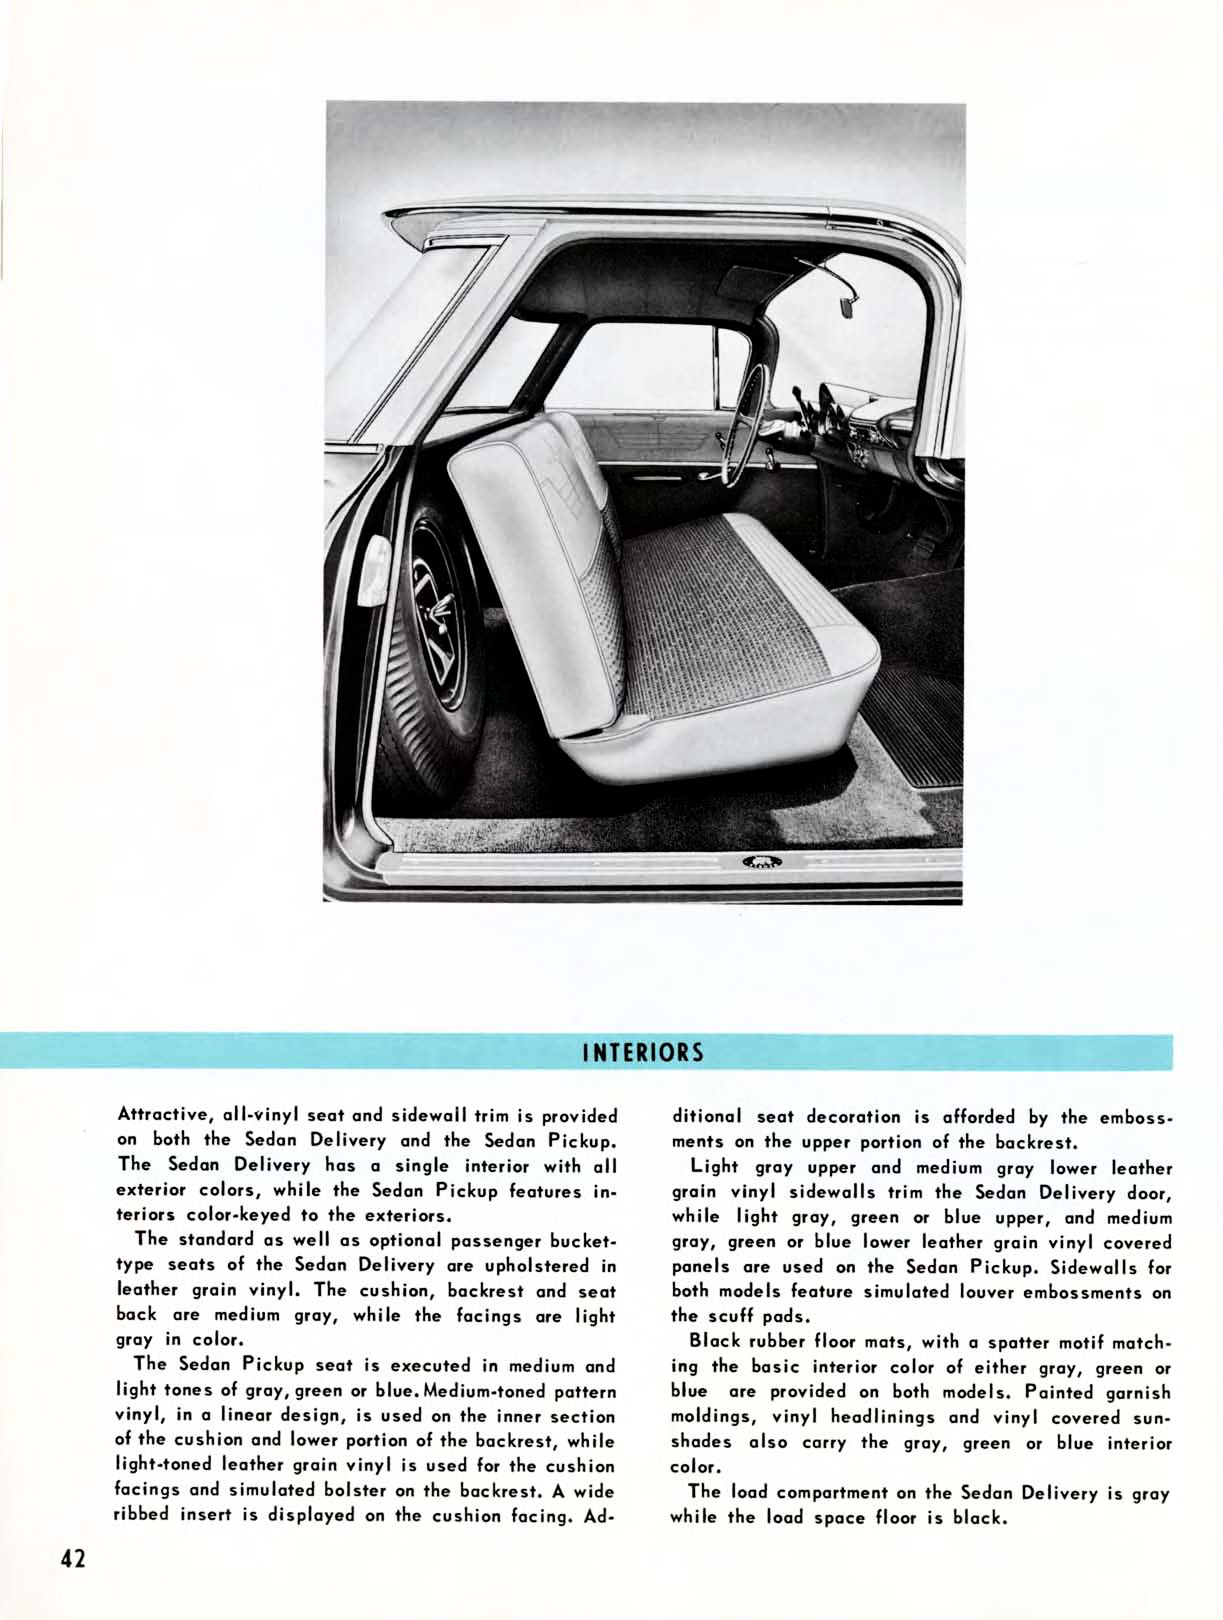 1959 Chevrolet Truck Engineering Features-42